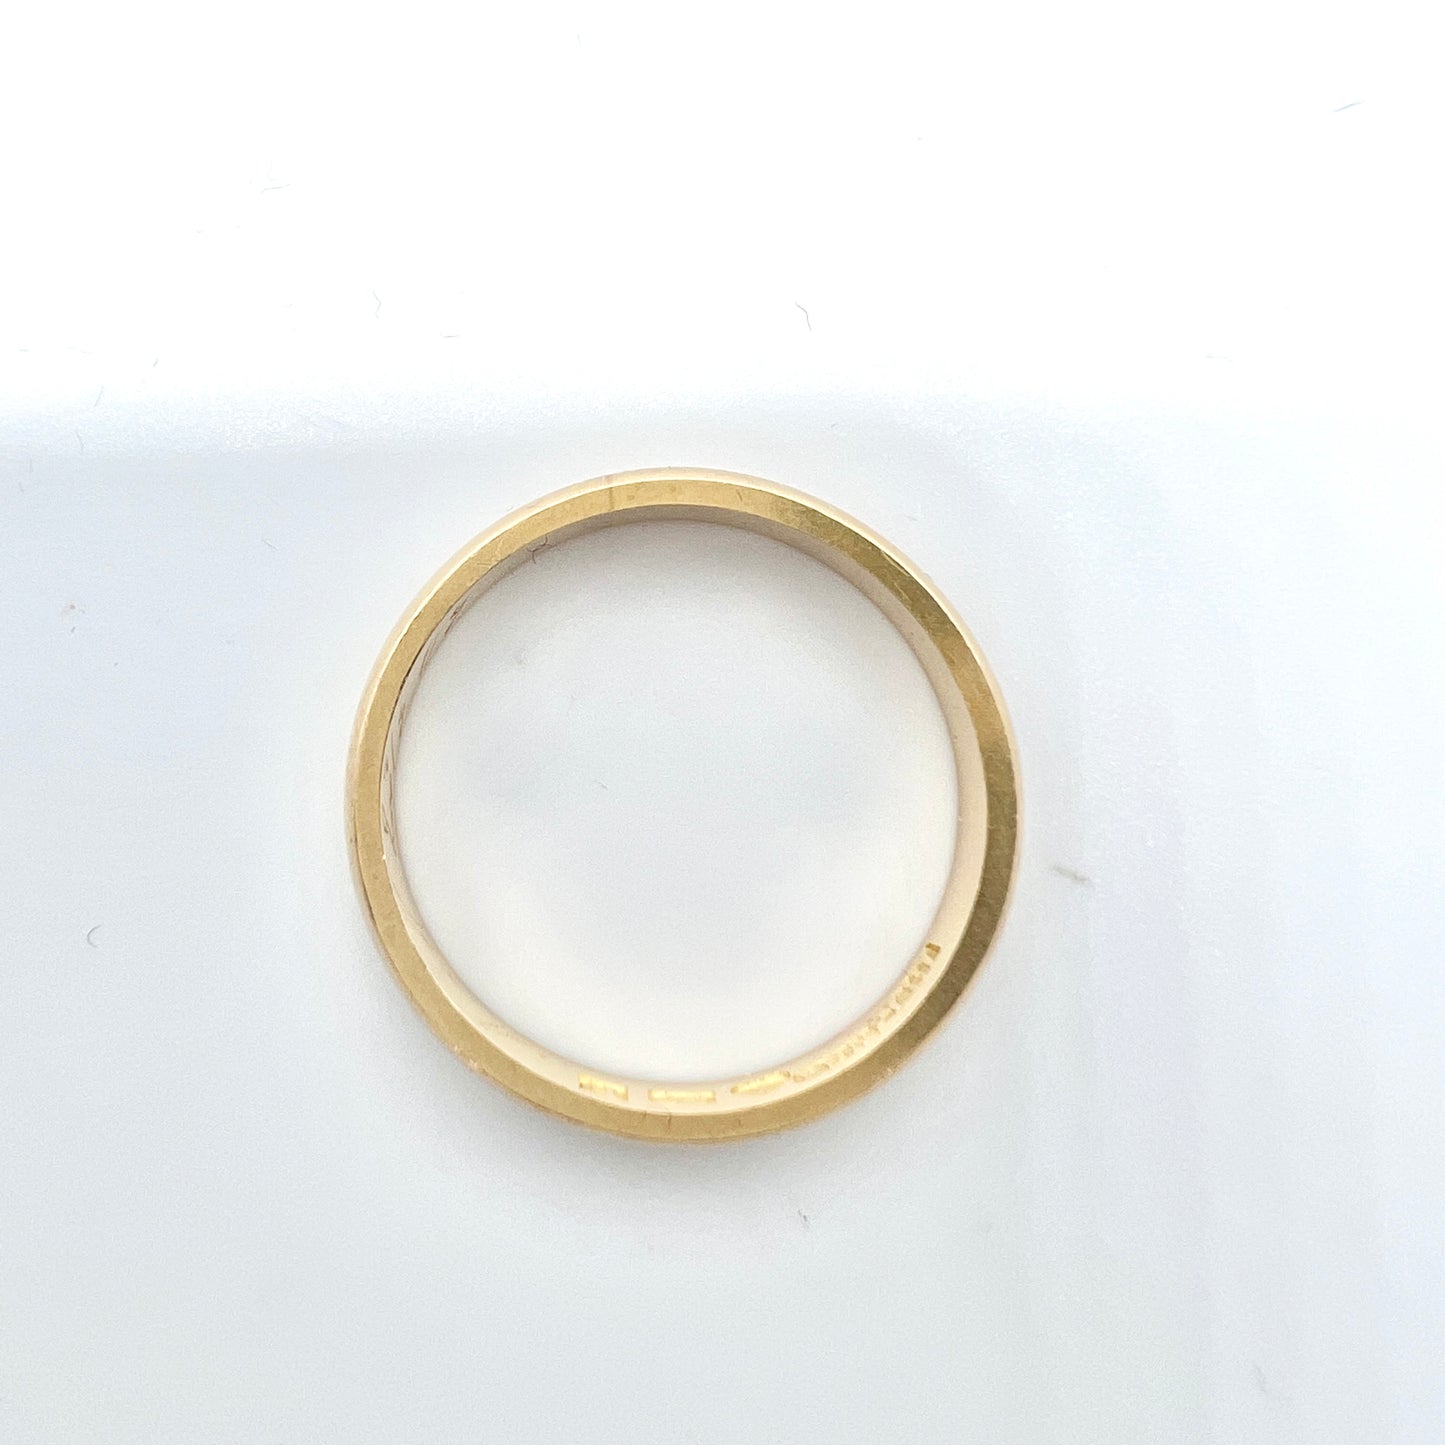 N Selander, Sweden 1909. Antique 18k Gold Wedding Band Ring.